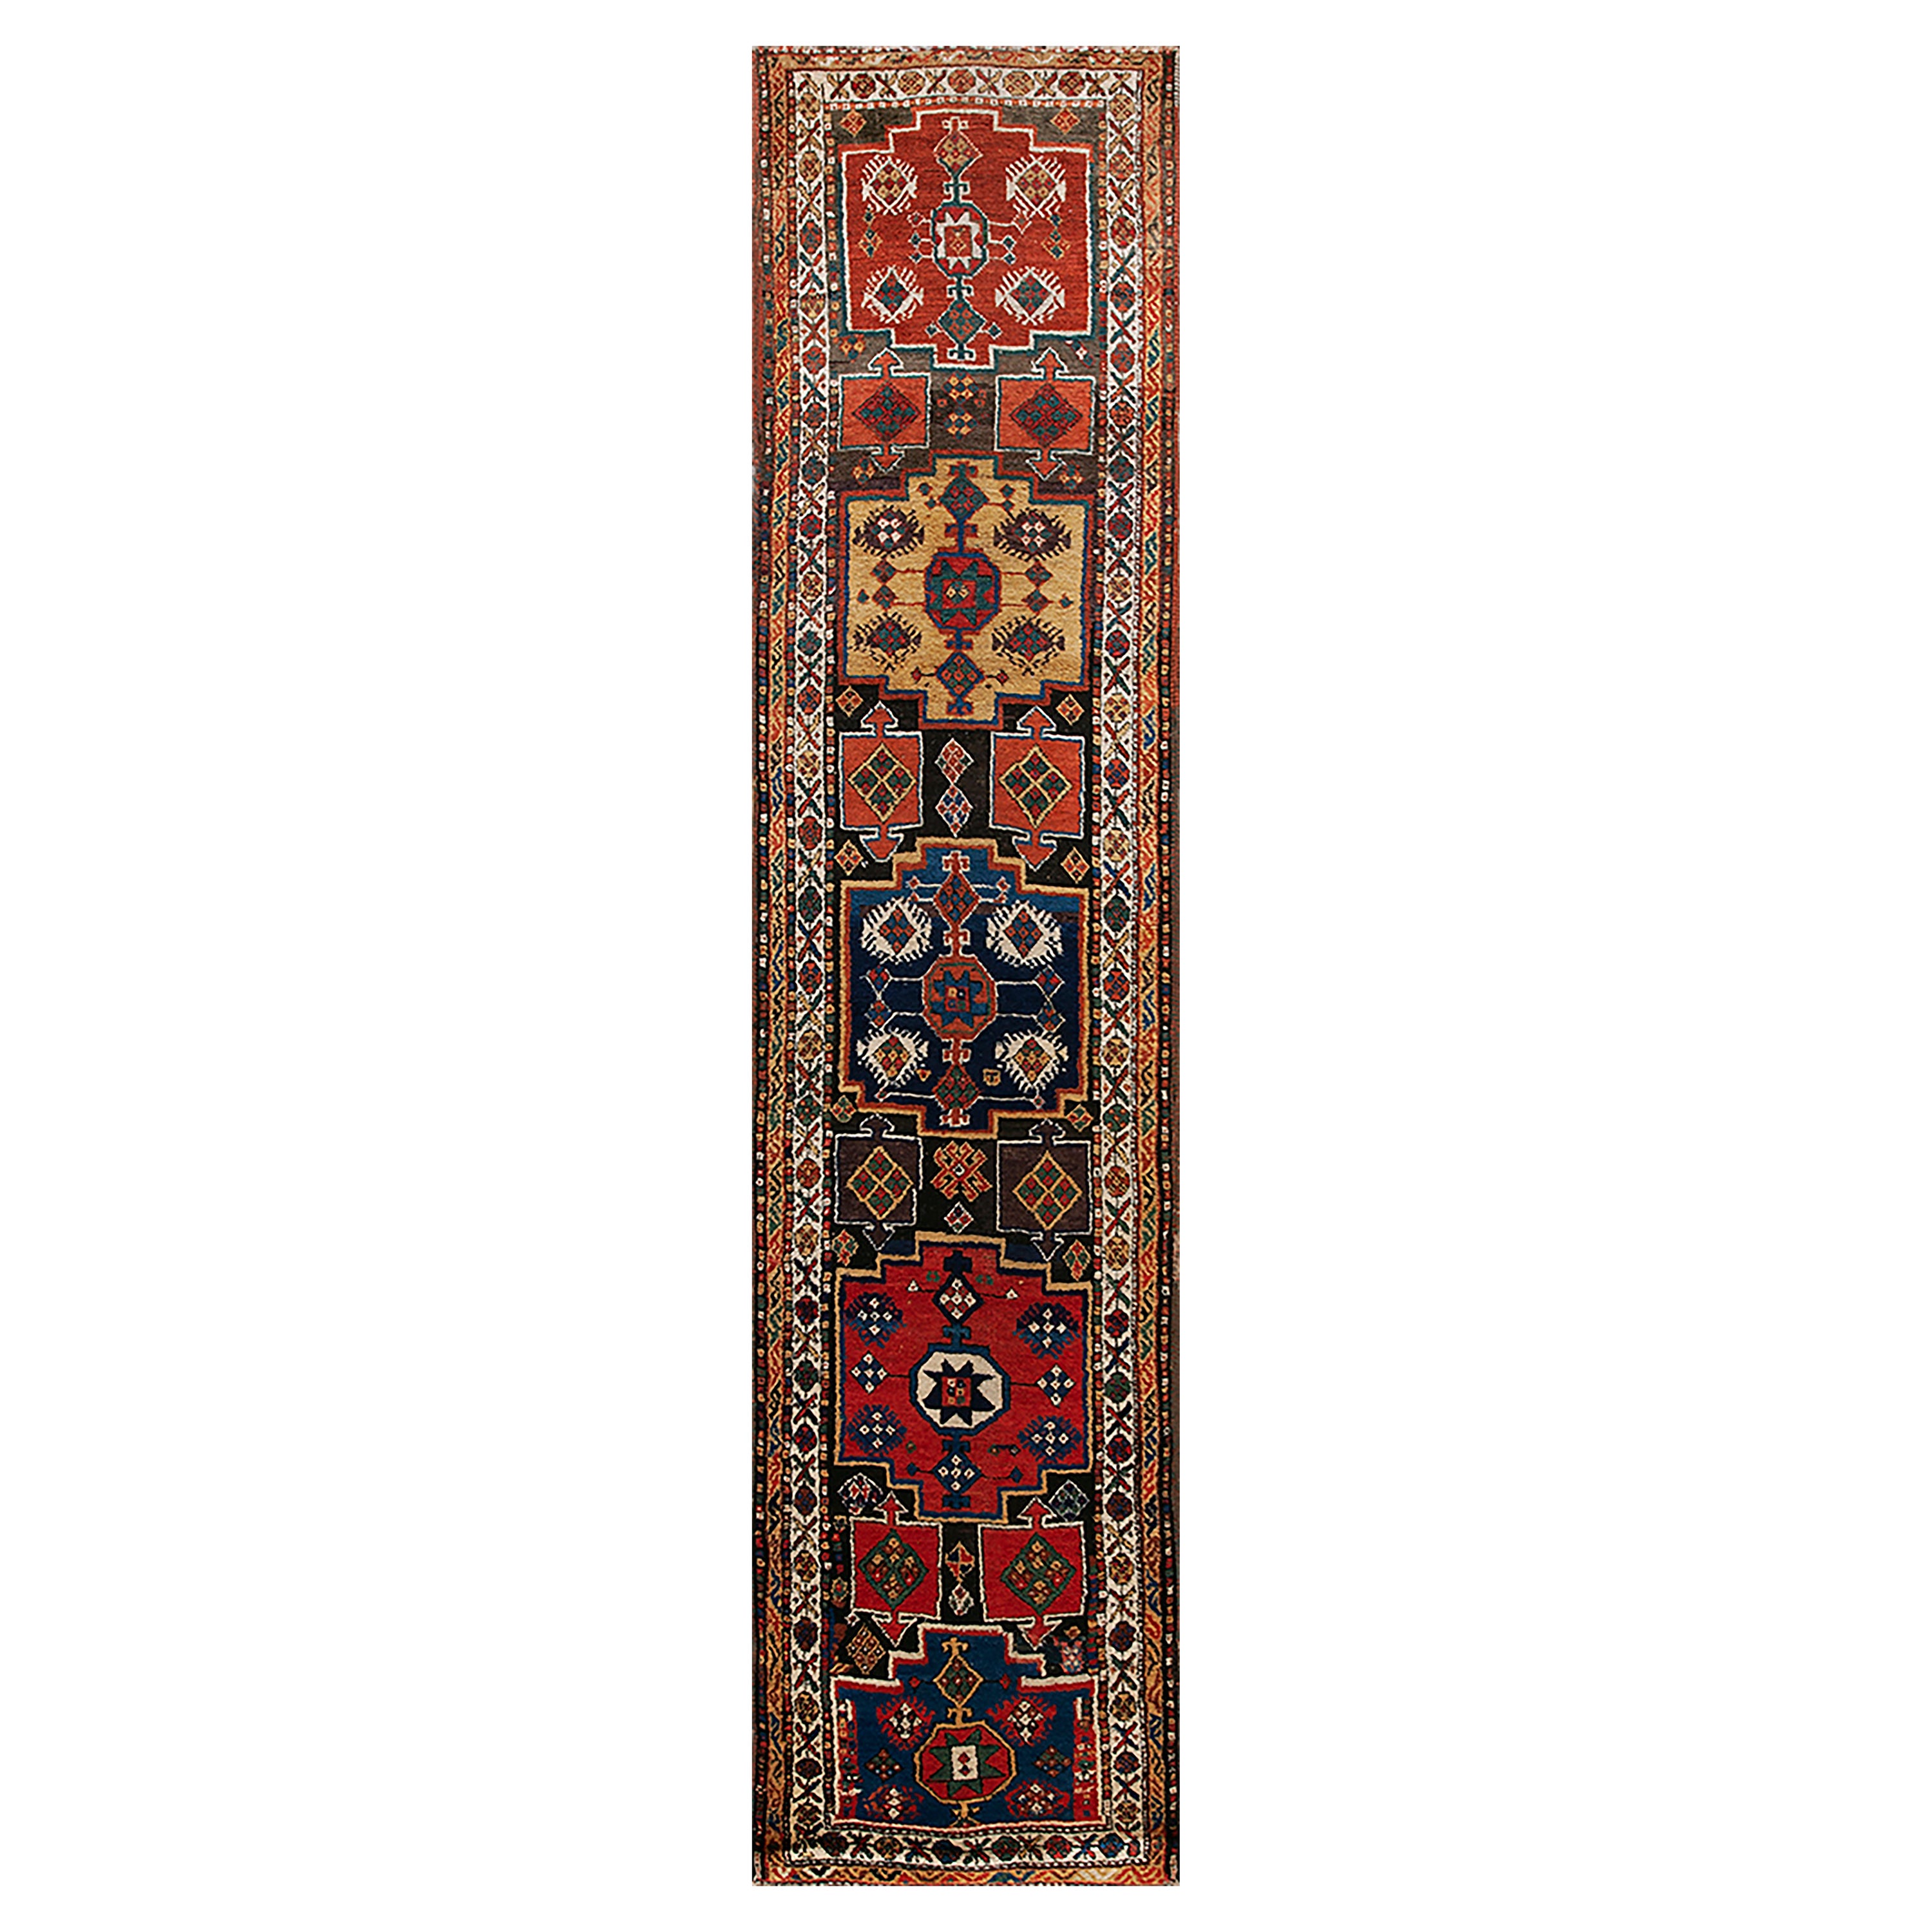 E. Anatolischer Kurdischer Teppich aus dem 19. Jahrhundert